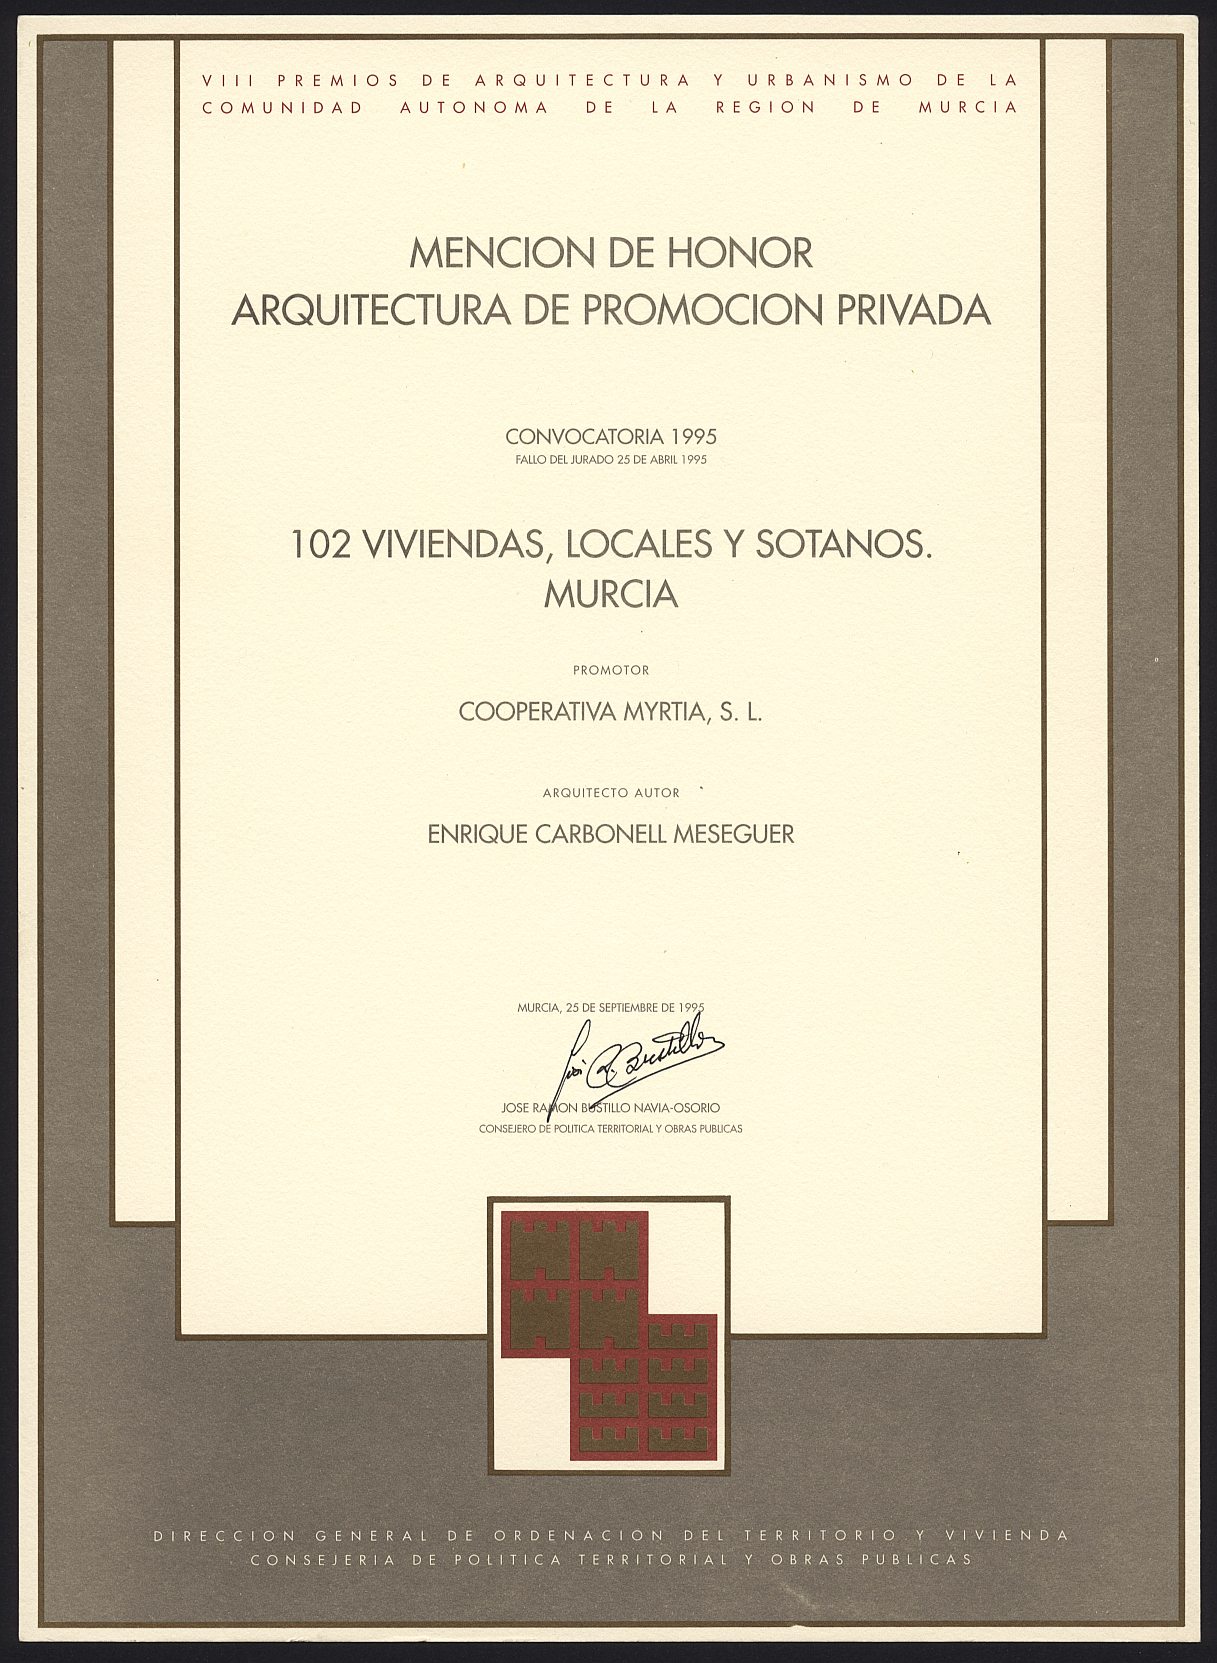 Diploma de Mención de Honor en Arquitectura de Promoción Privada a Enrique Carbonell por el proyecto de 102 viviendas, locales y sótanos de la Cooperativa Myrtia, en Murcia, de los Premios de Urbanismo y Arquitectura de la Región de Murcia.